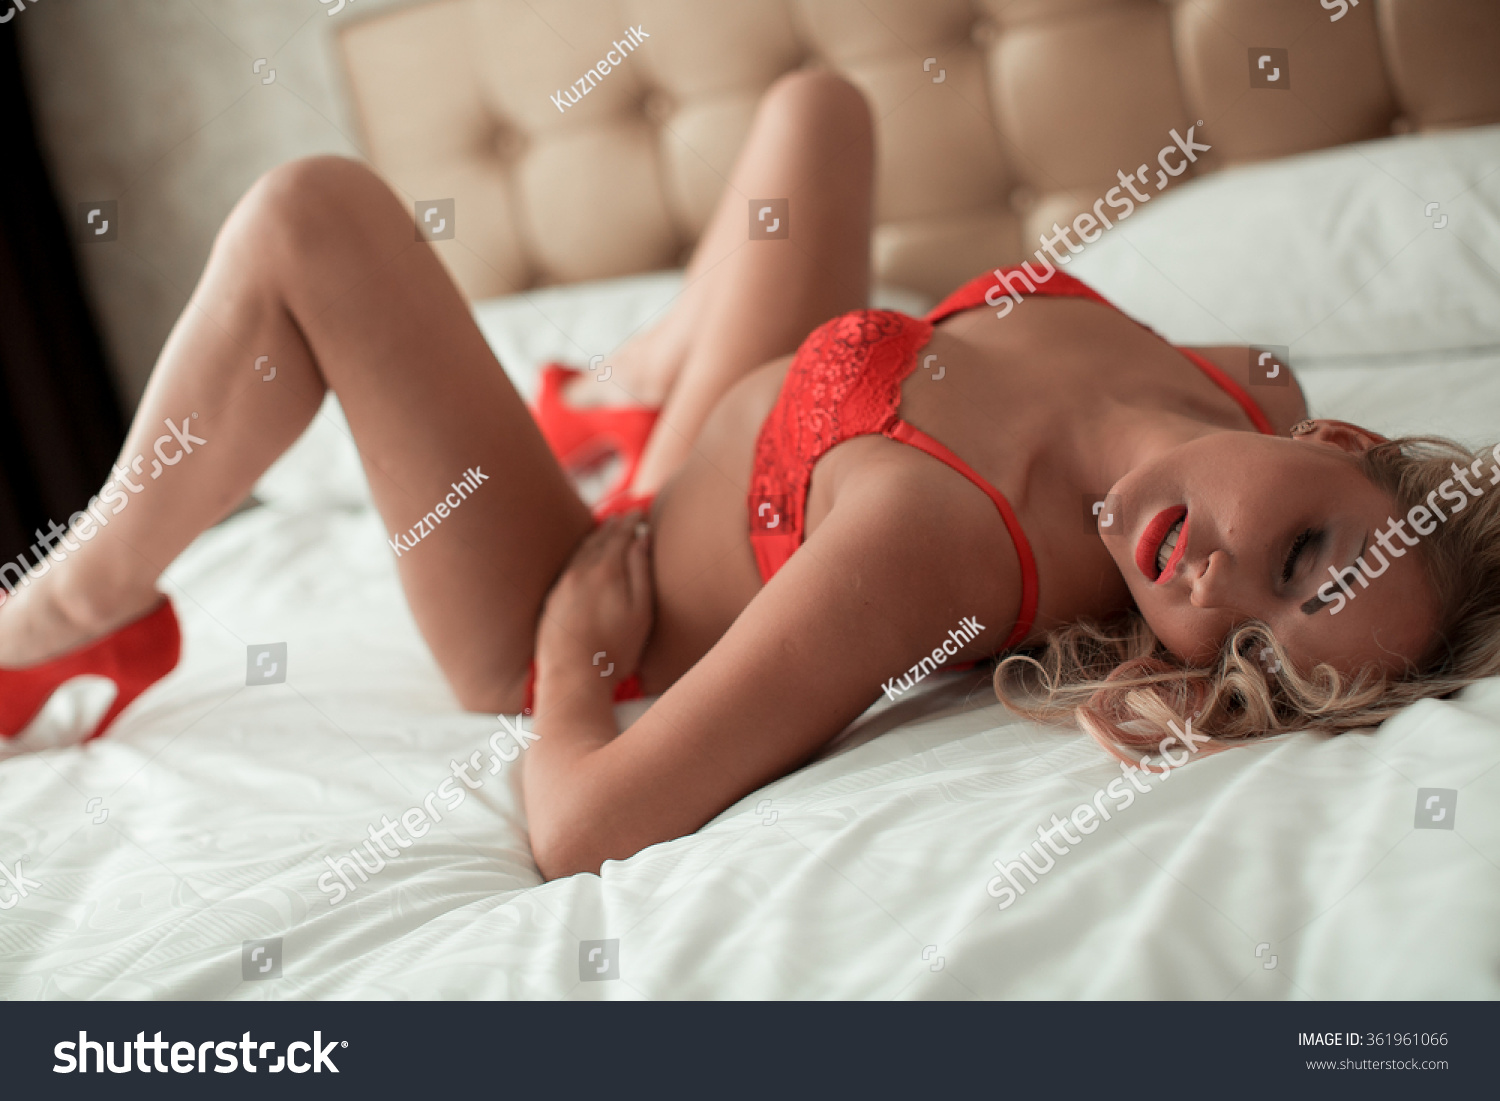 Woman erotic